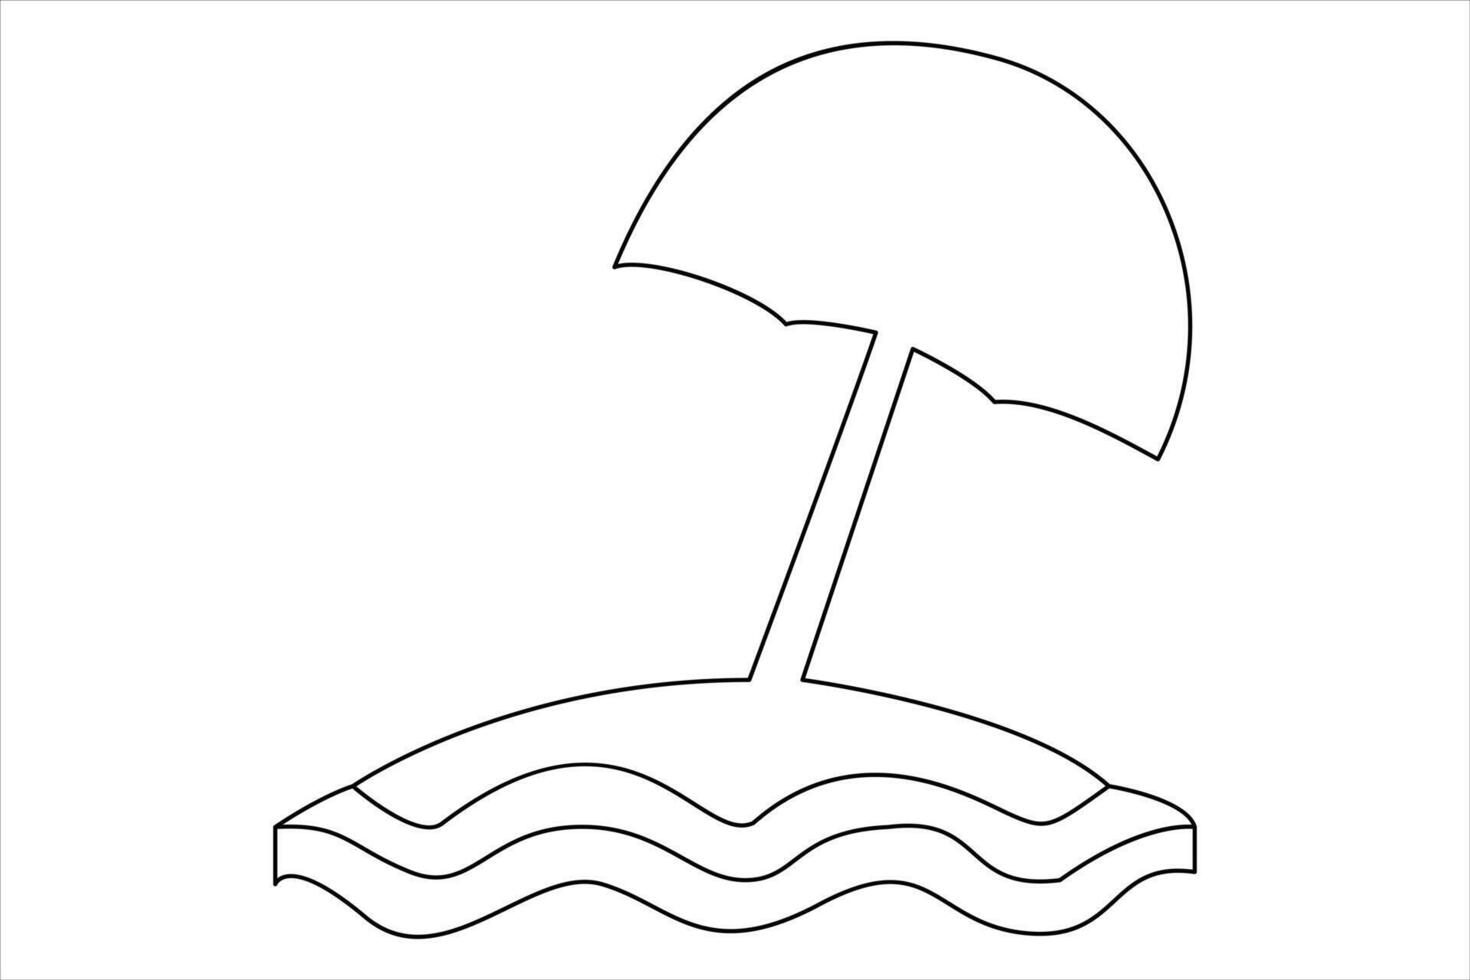 kontinuerlig ett linje teckning av strand paraply handflatan träd för sommar Semester linje konst illustration vektor